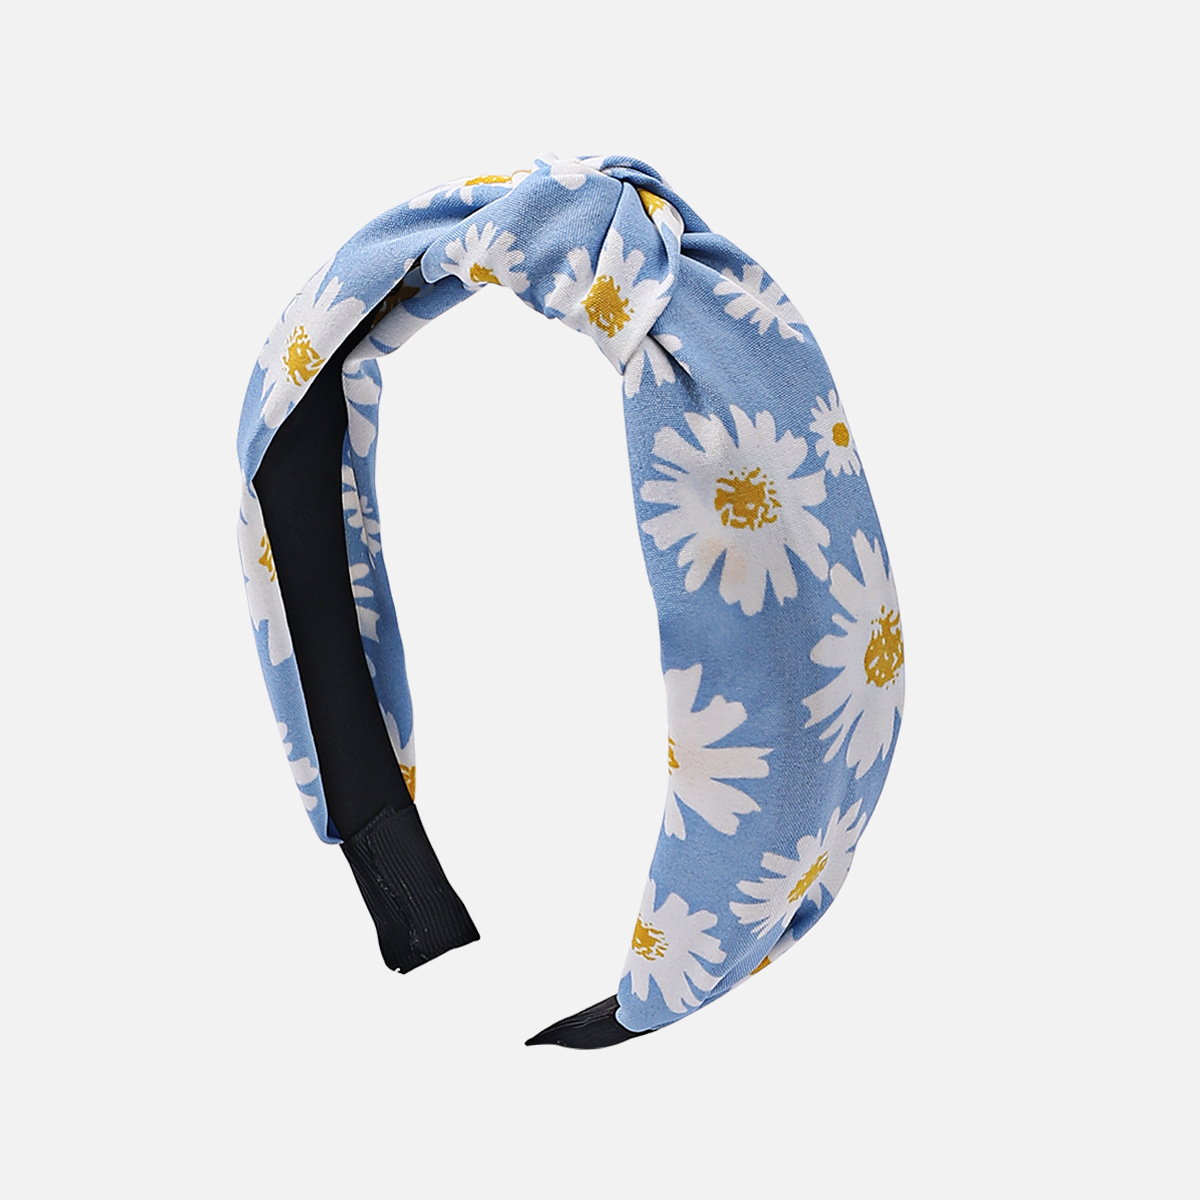 2:blue daisy knot headband